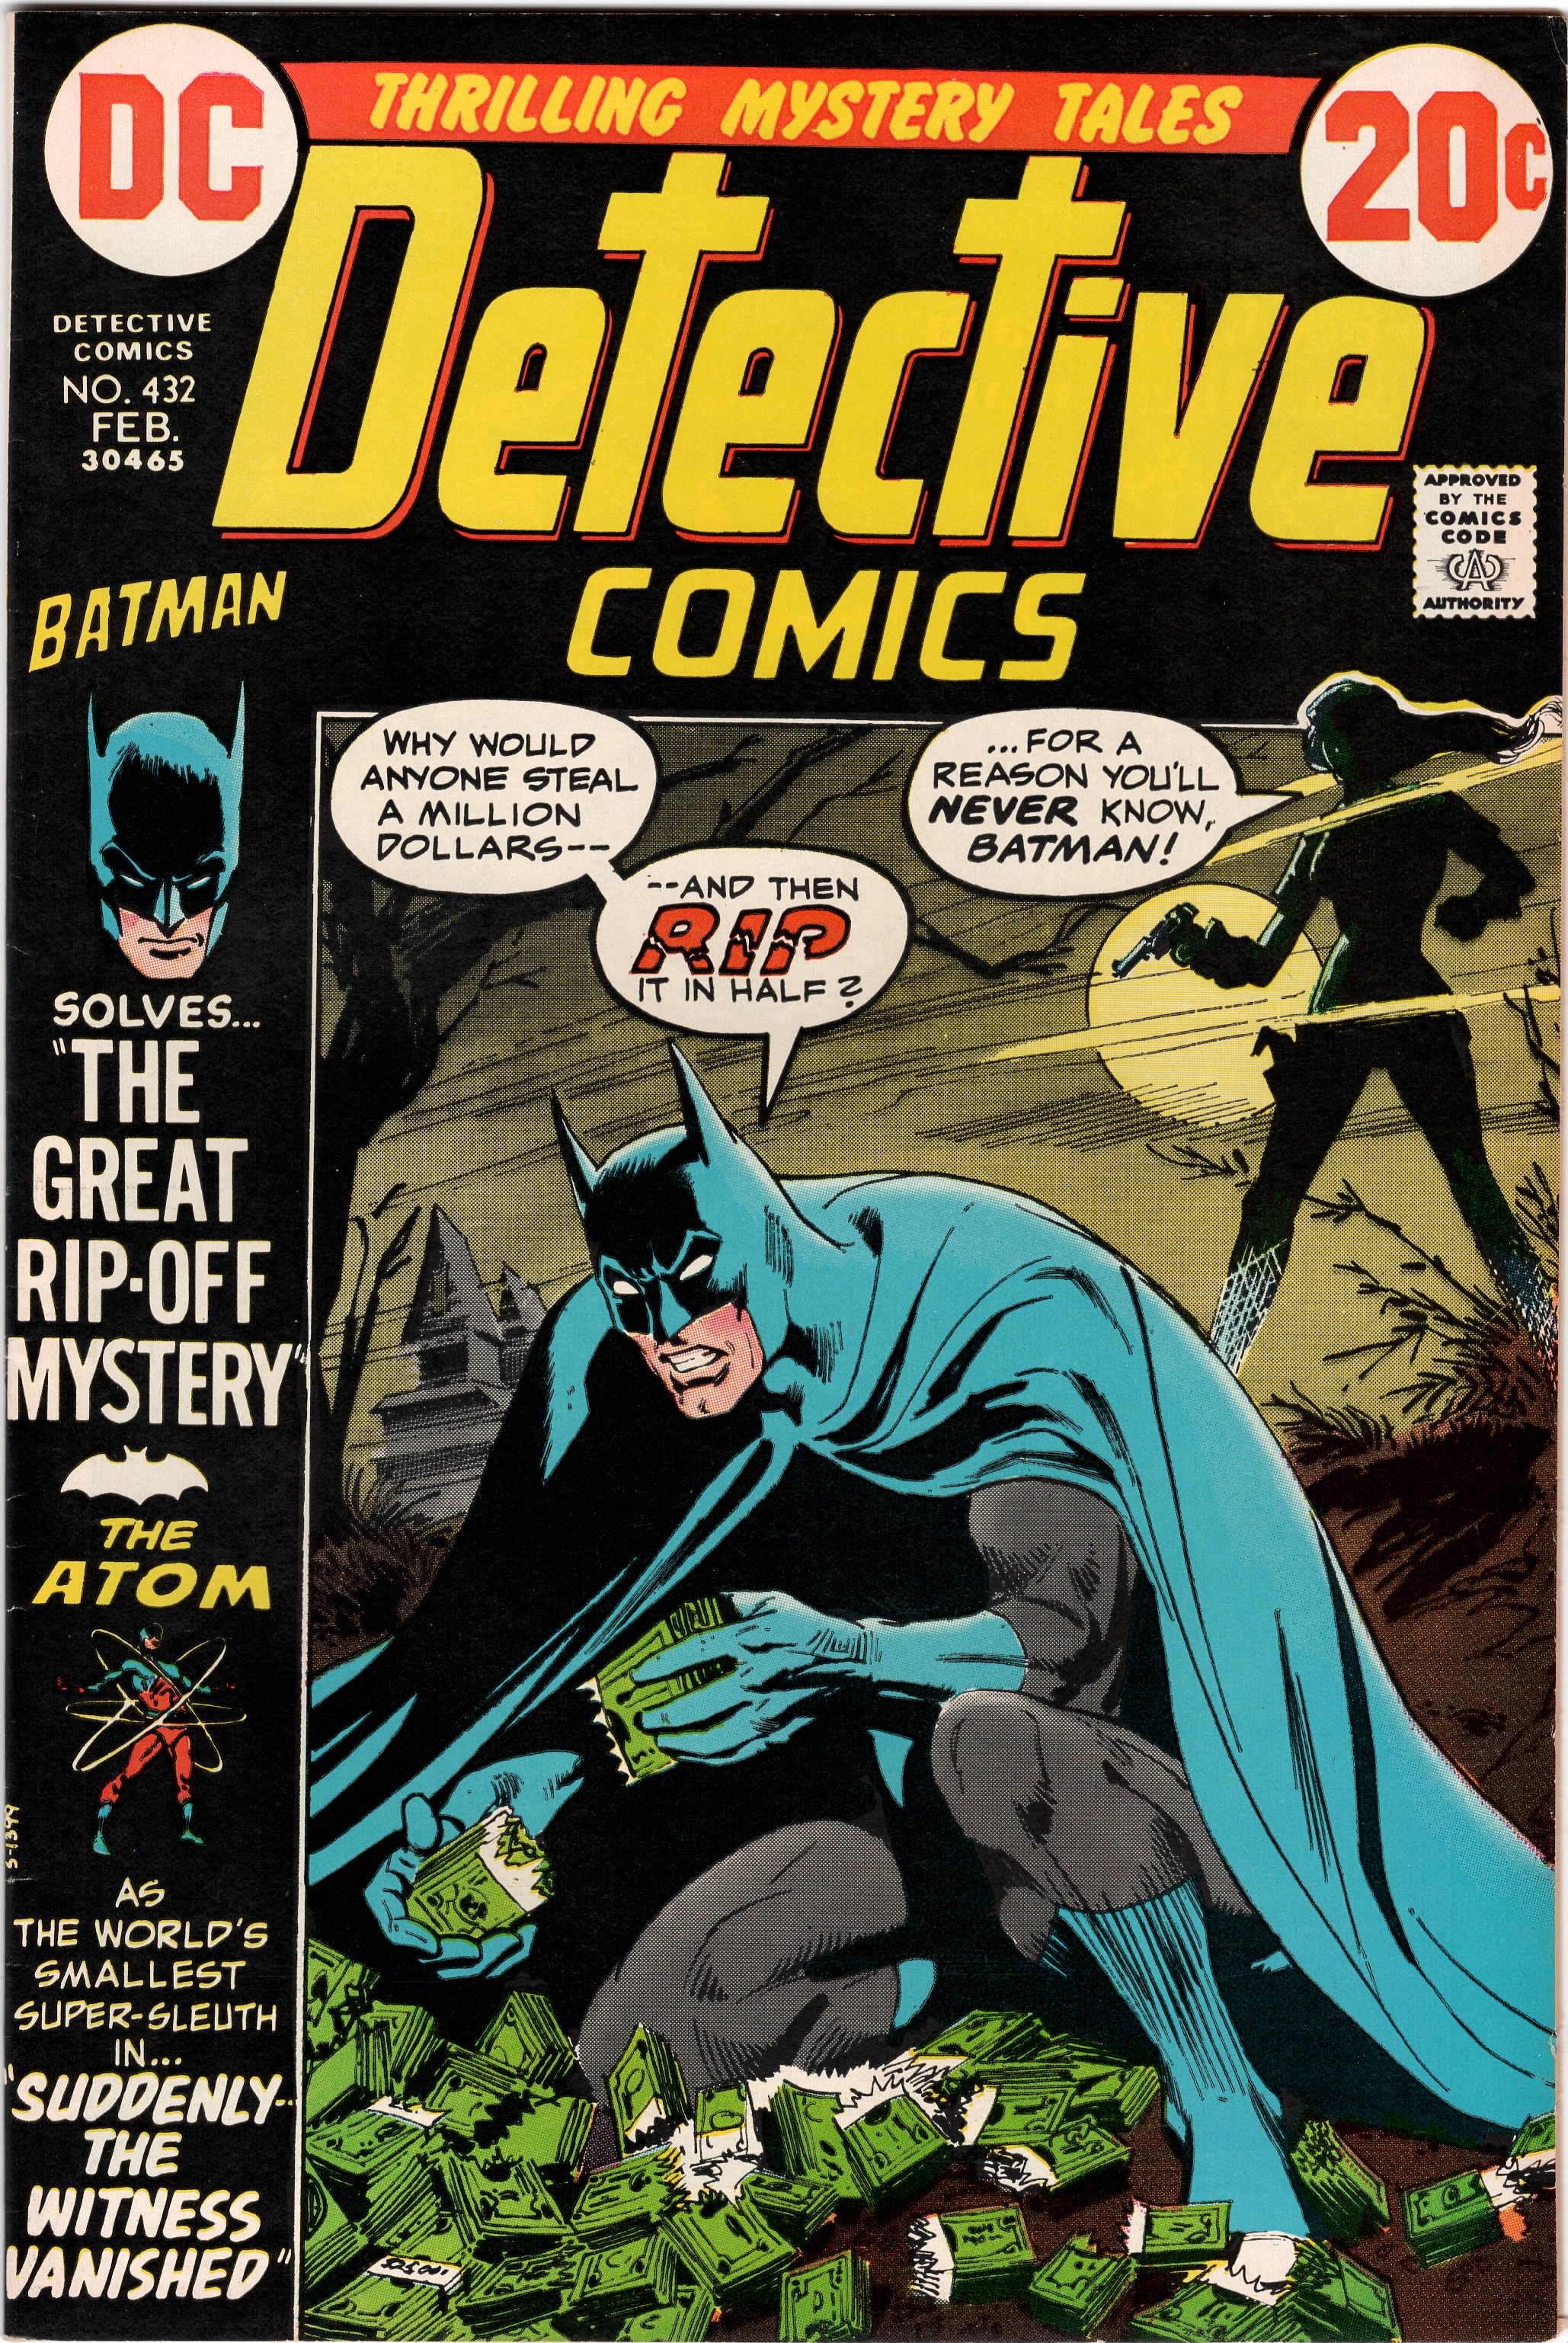 Detective Comics #0432